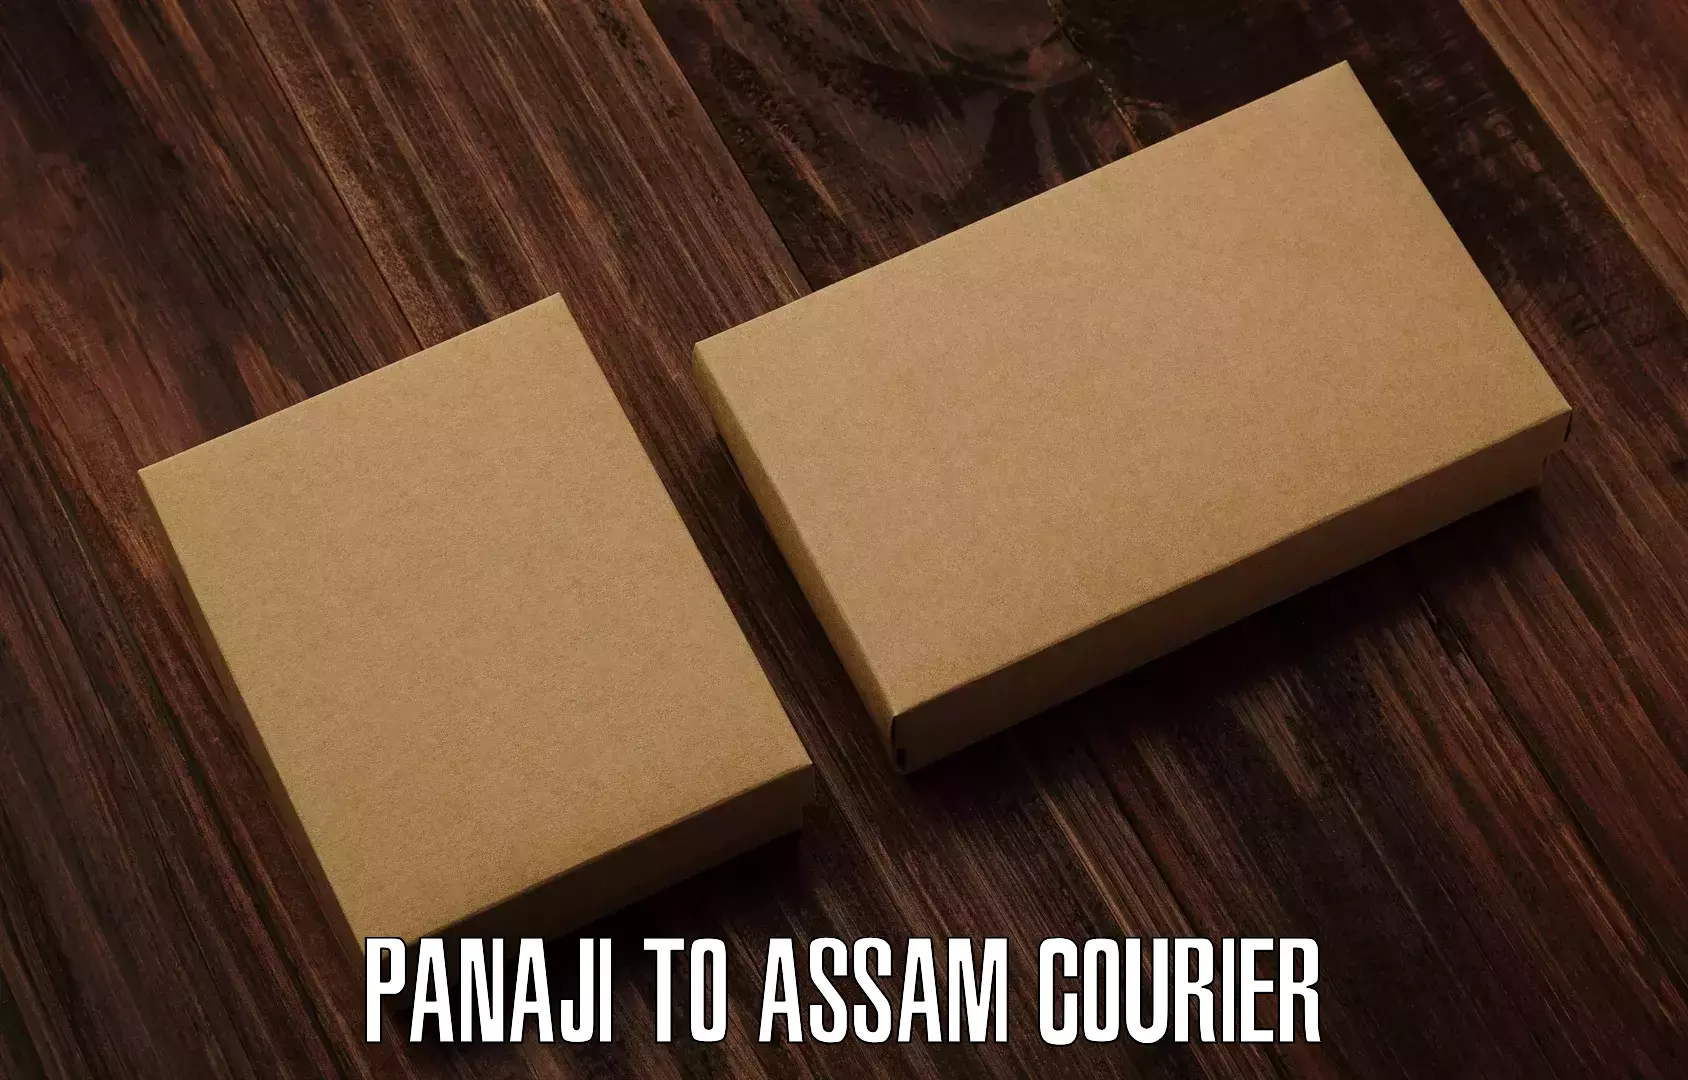 Heavy parcel delivery Panaji to Behali